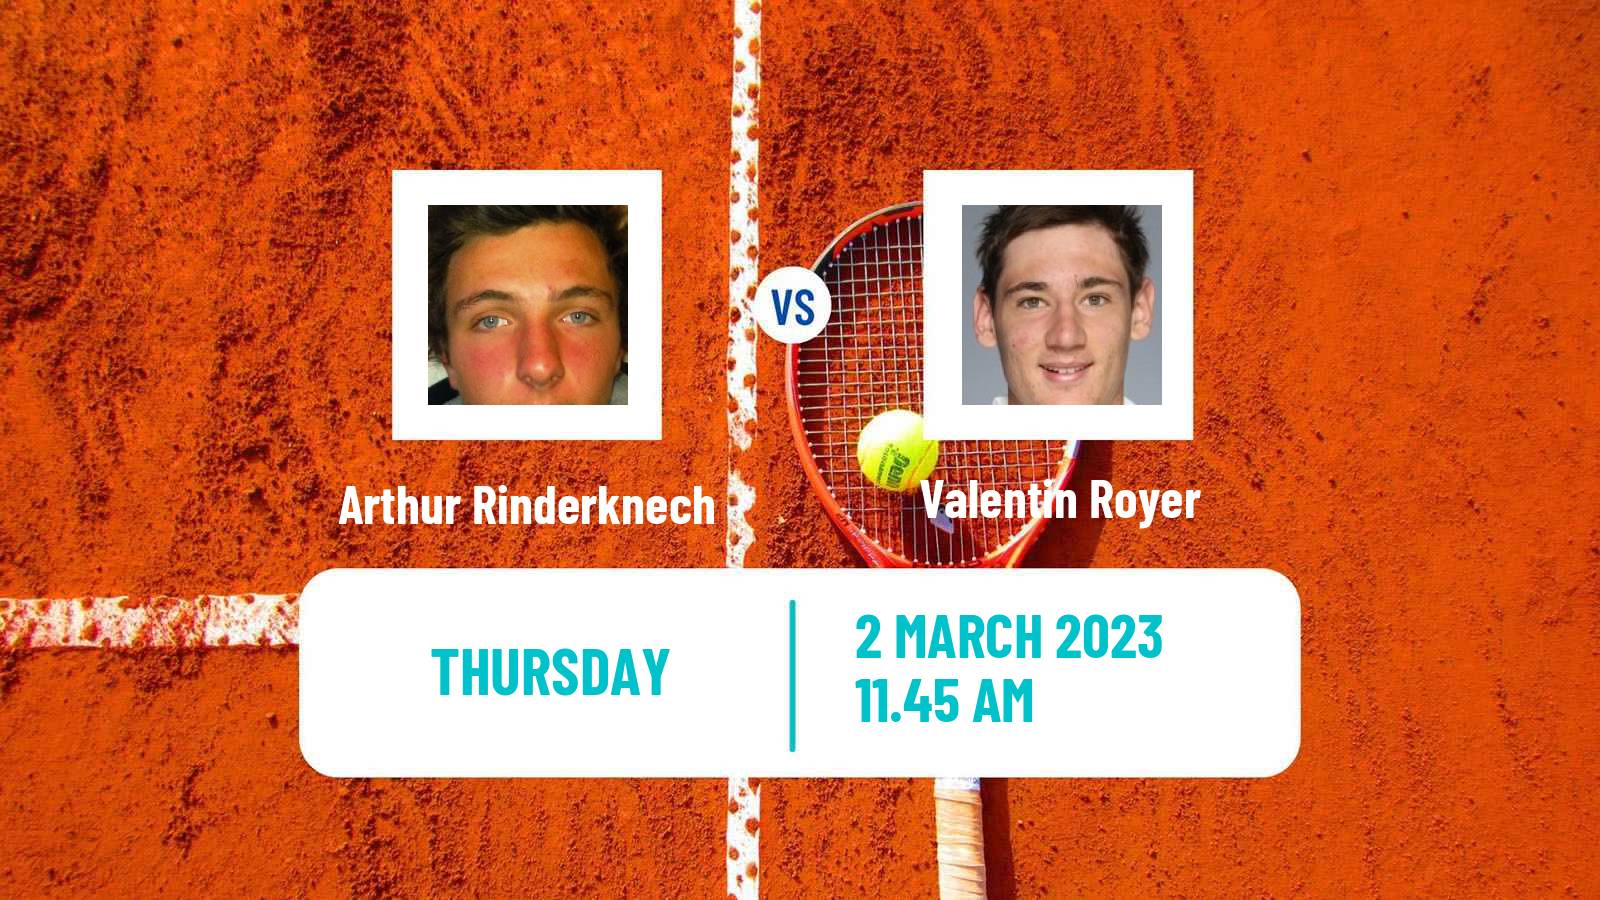 Tennis ATP Challenger Arthur Rinderknech - Valentin Royer